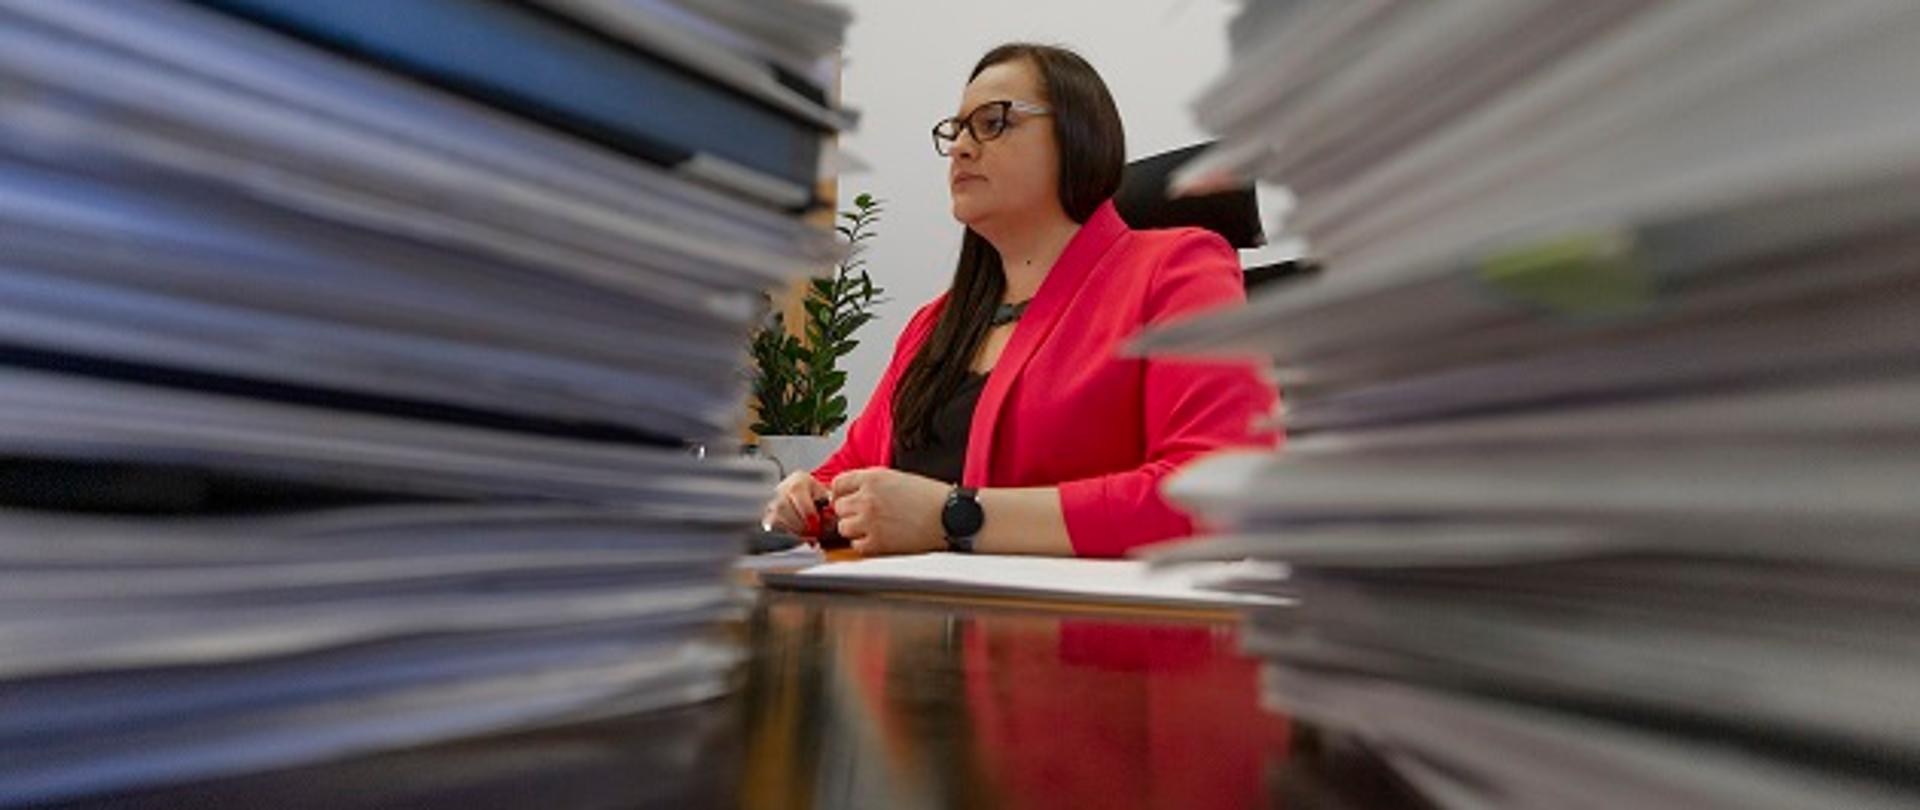 Zdjęcie minister Małgorzaty Jarosińskiej-Jedynek za biurkiem. Kadr pokazuje Minister między dwoma stosami dokumentów.